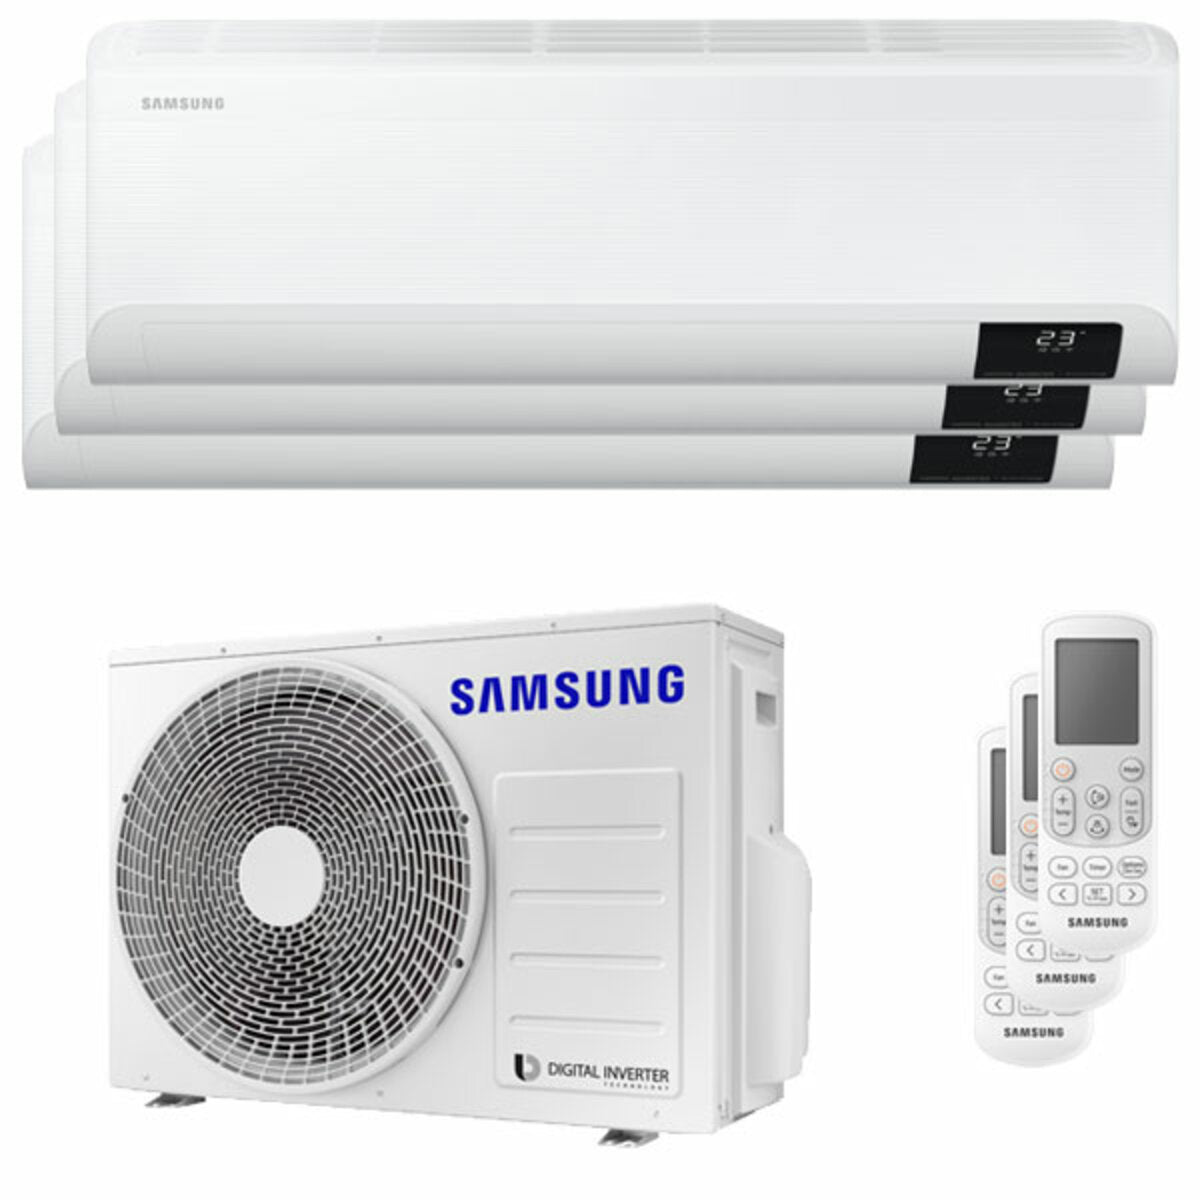 Samsung Cebu Wi-Fi Trial Split Klimaanlage 7000 + 7000 + 7000 BTU Wechselrichter A++ WLAN Außengerät 5,2 kW